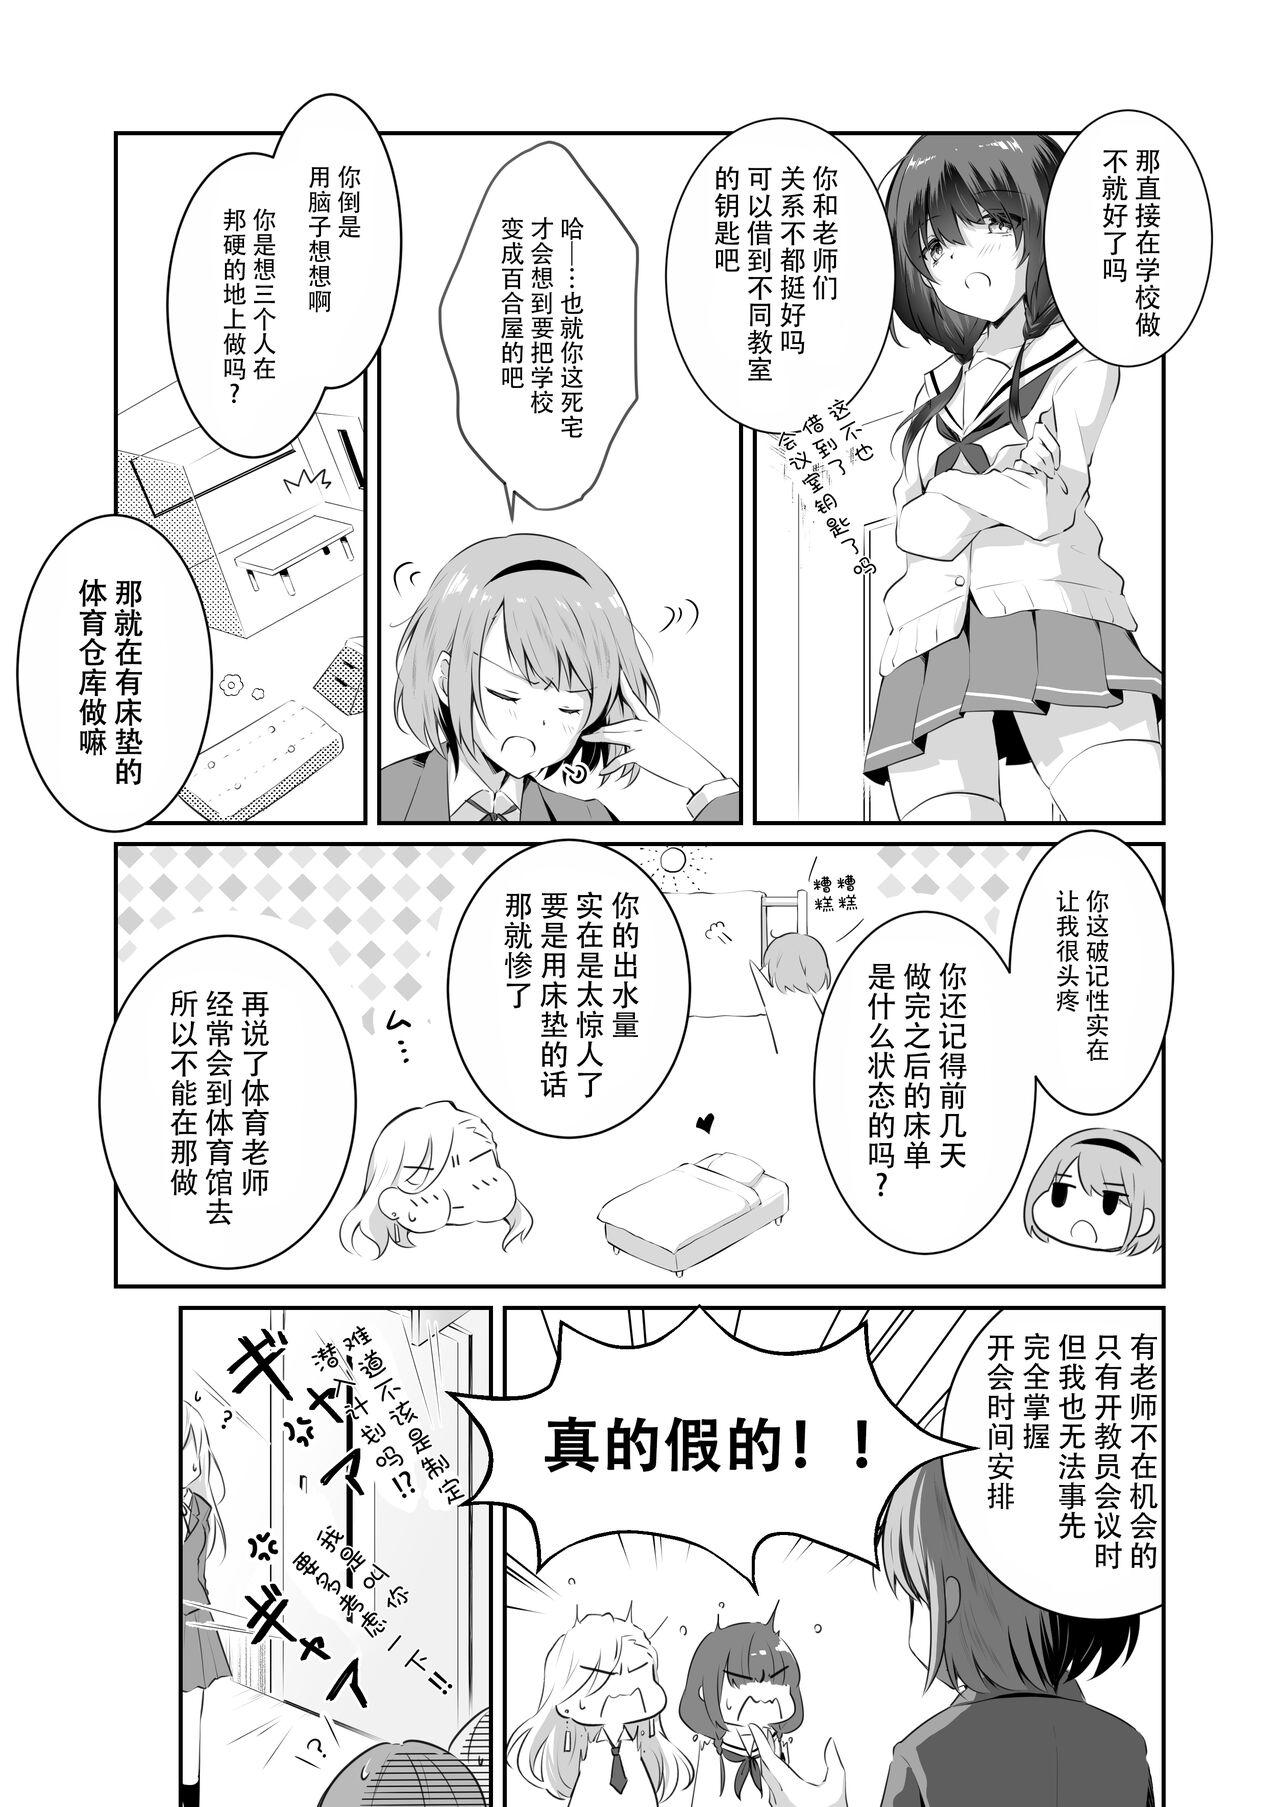 Nurumassage 家庭内売春2 NICOLAI - Original Uncut - Page 10